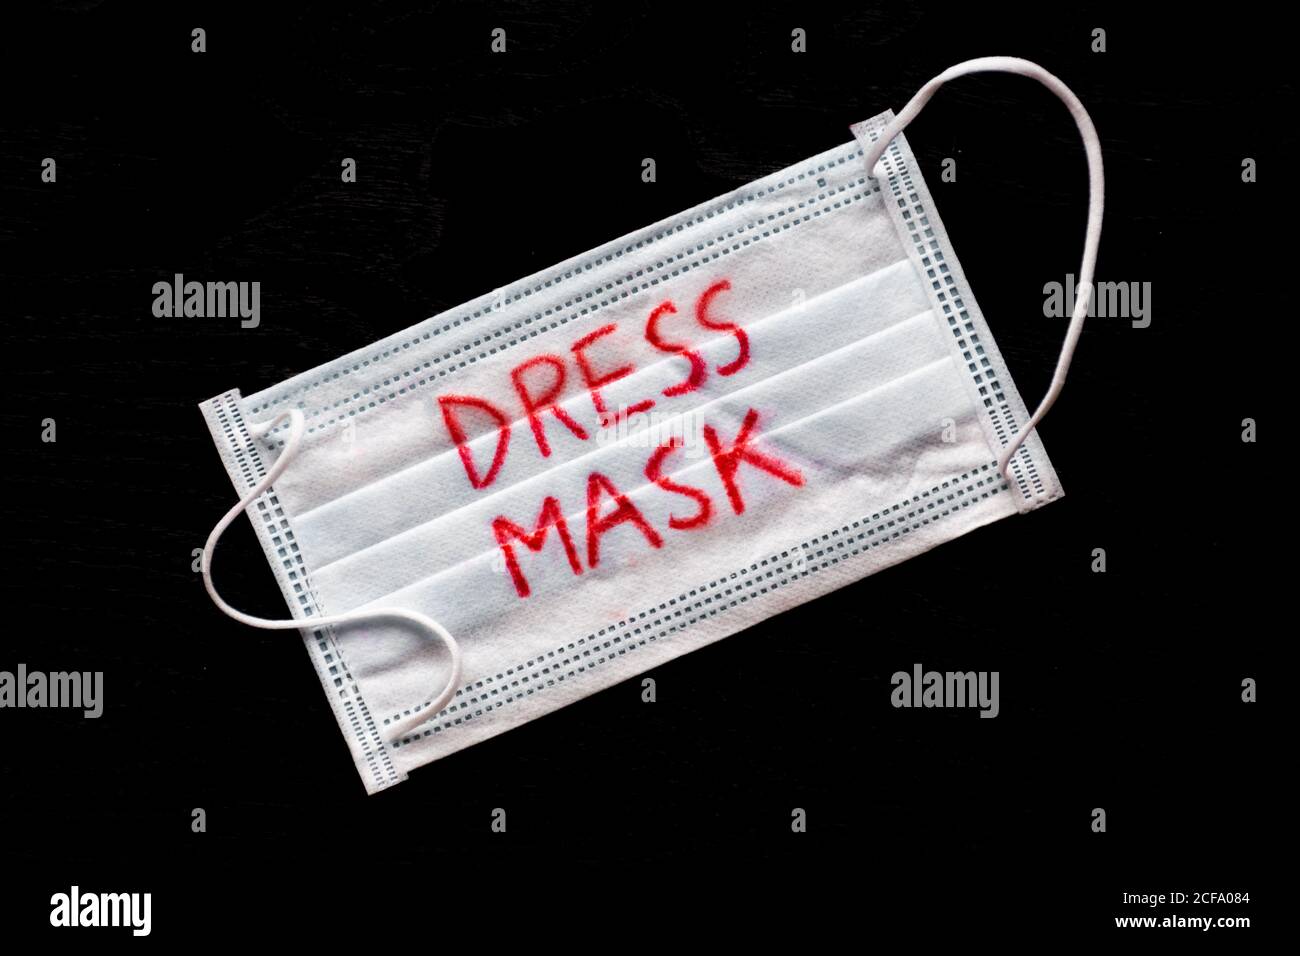 Indossare la maschera, la maschera protettiva per il viso contro la diffusione di Coronavirus o COVID-19 Foto Stock